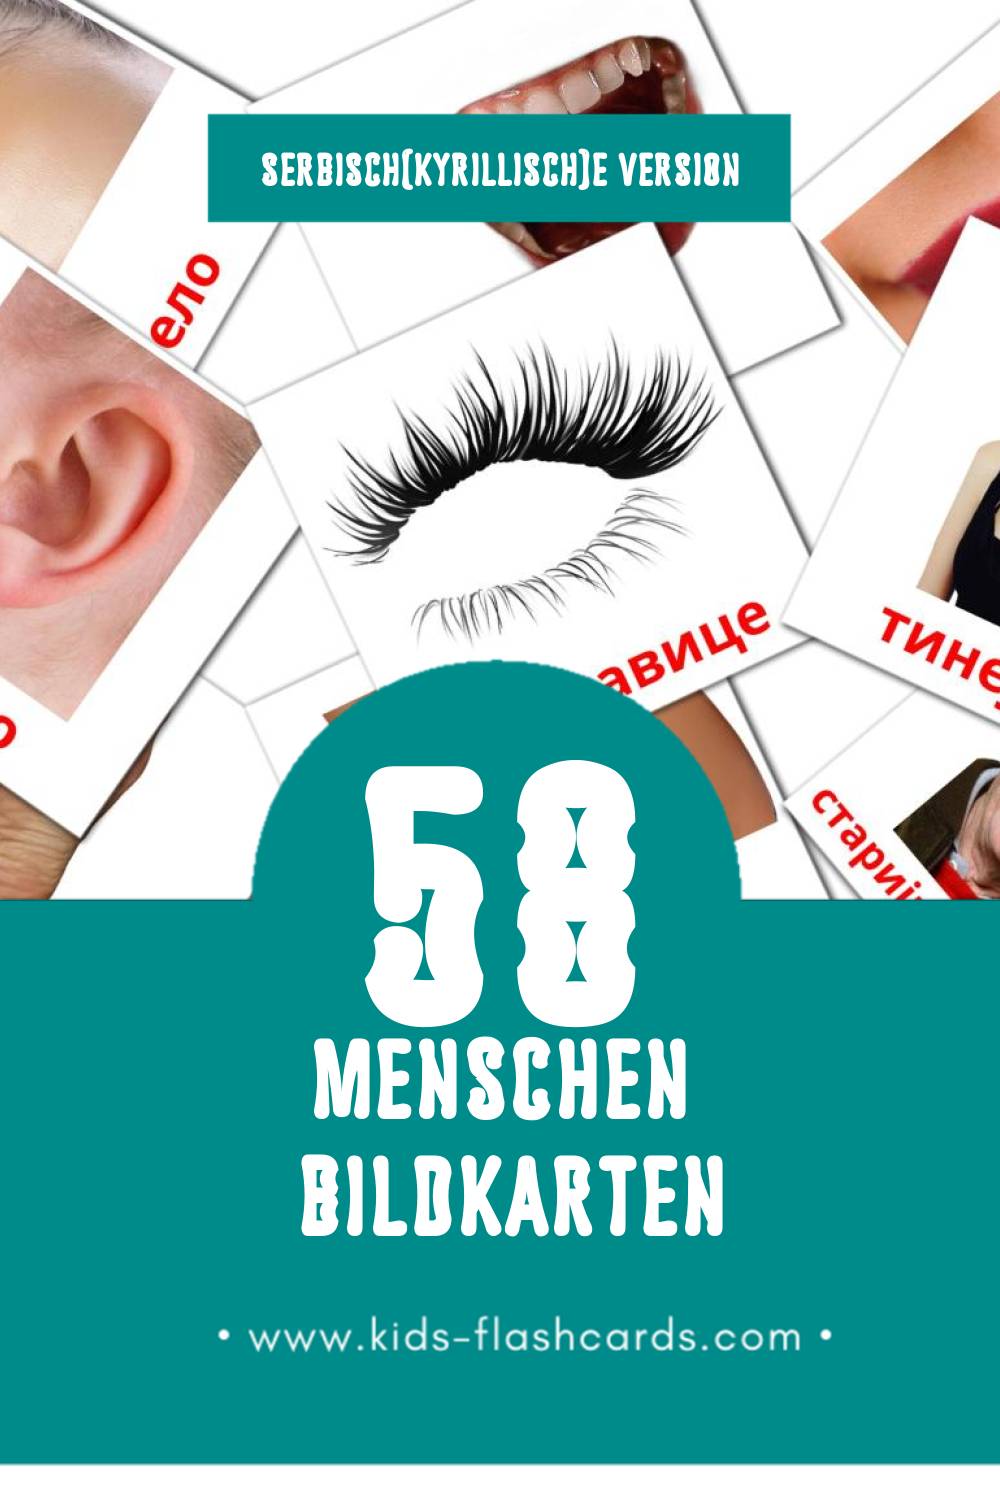 Visual Људи Flashcards für Kleinkinder (177 Karten in Serbisch(kyrillisch))